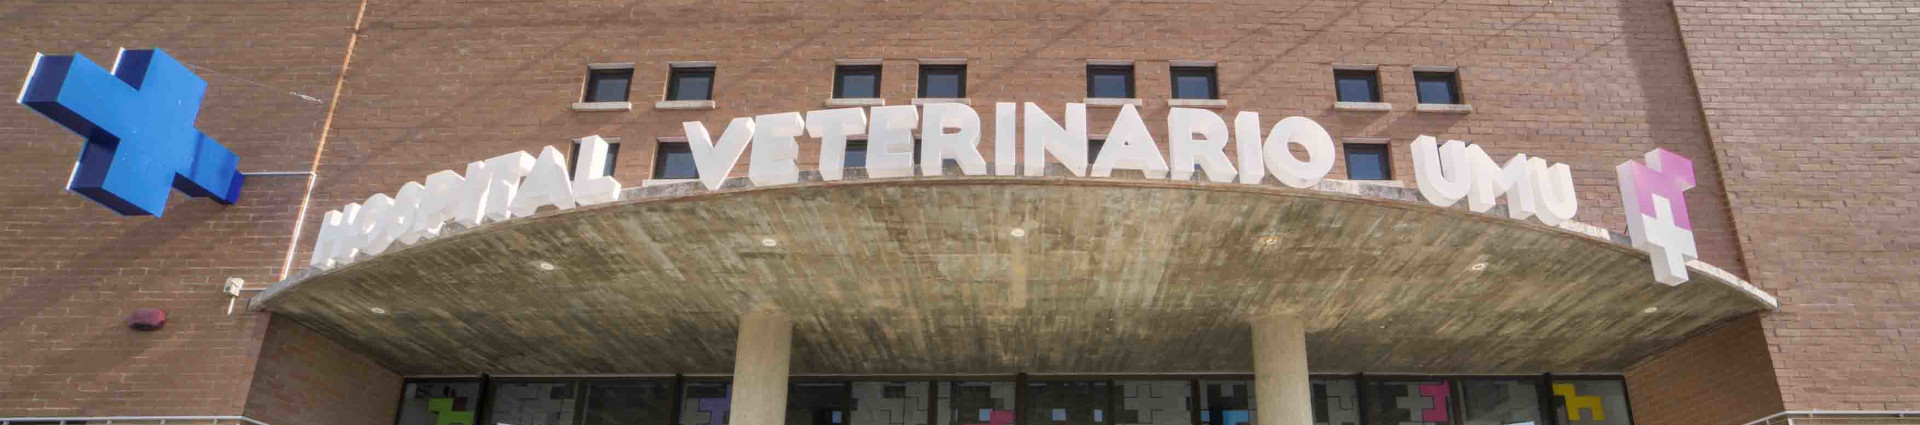 Hospital Veterinario 24 horas abierto los 365 dias, situado en el Campus de Espinardo